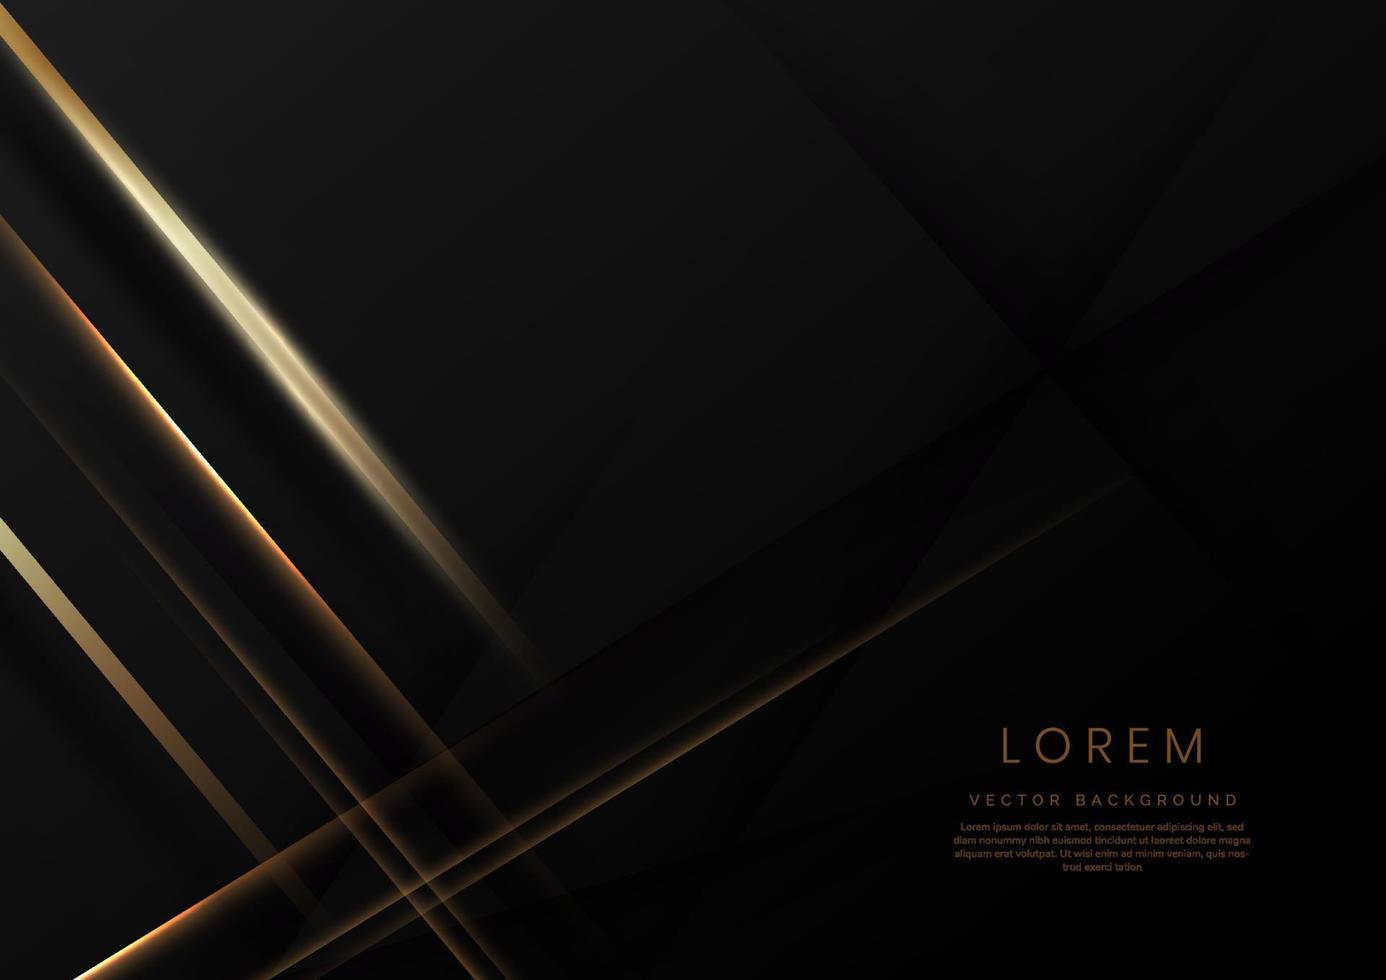 linee d'oro eleganti astratte diagonali su sfondo nero. stile di lusso con copia spazio per il testo. vettore